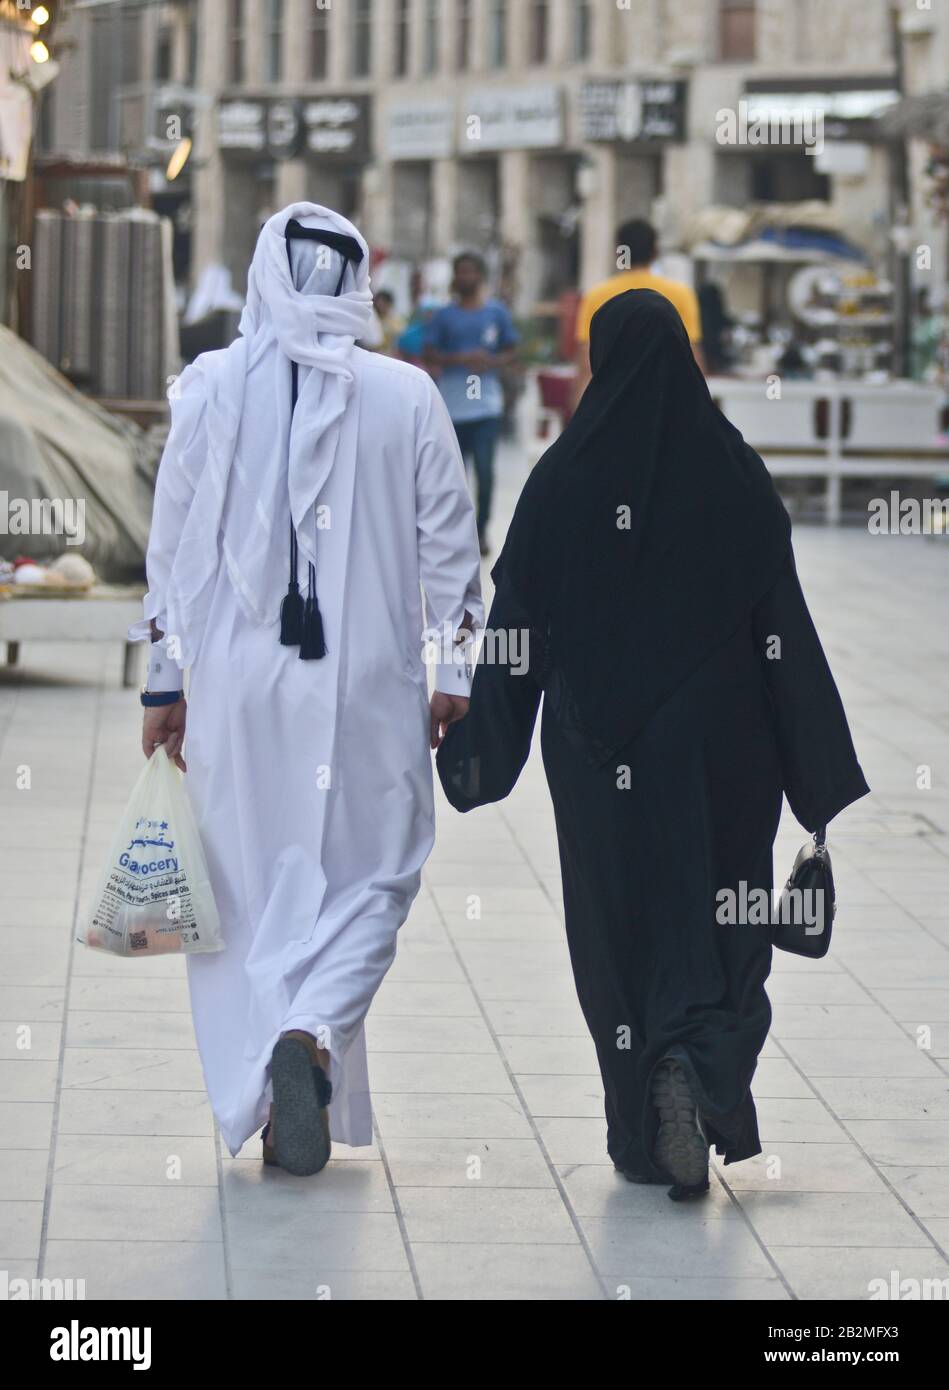 Muslimisches Paar, das in Souq Waqif, Doha, Katar spazieren geht Stockfoto